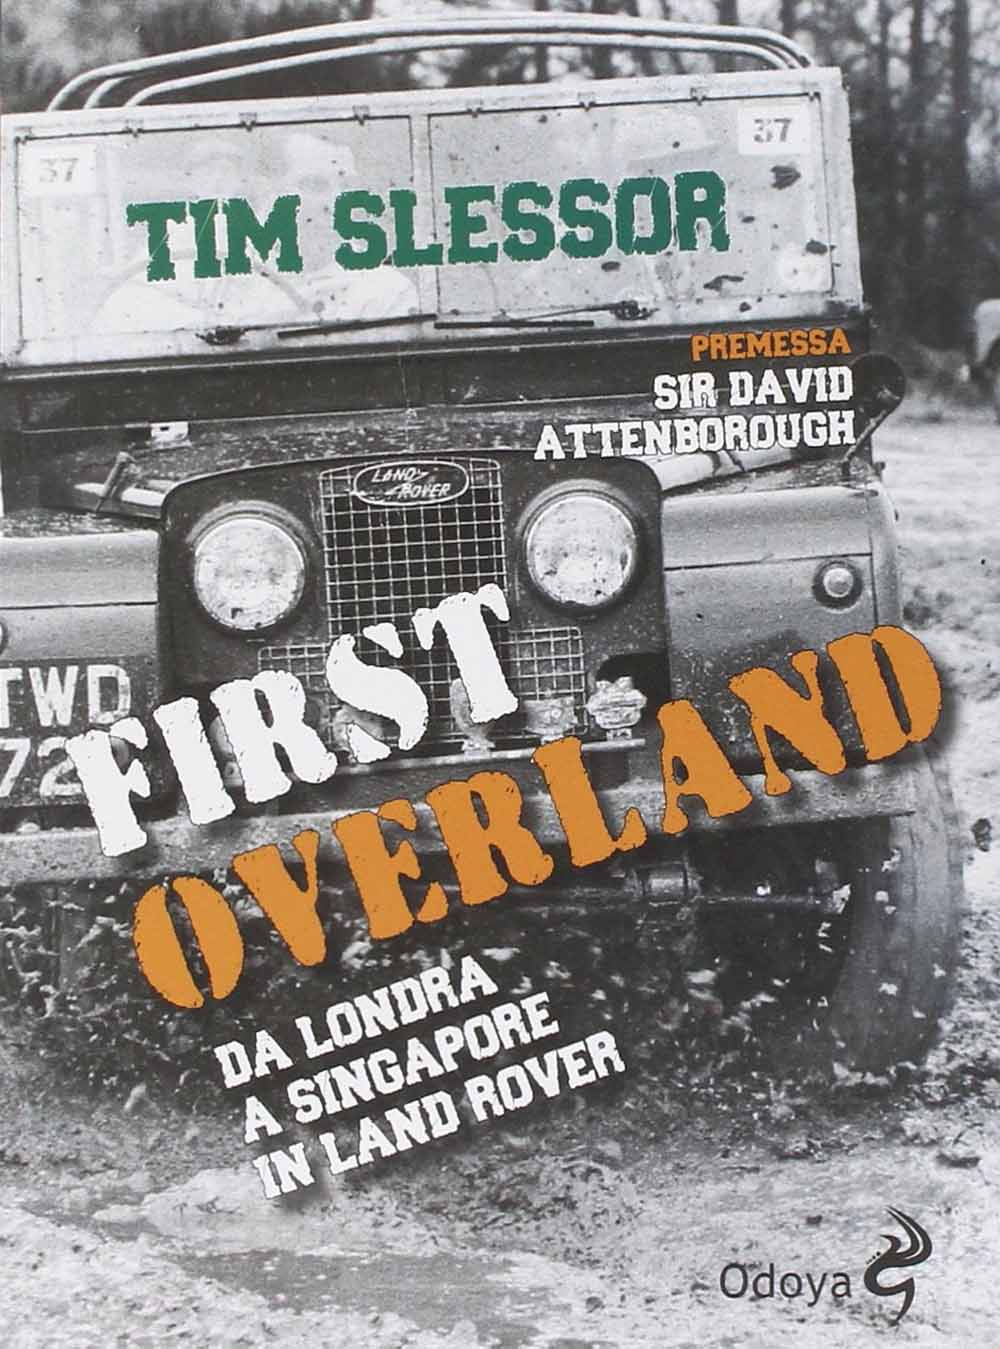 Libri Tim Slessor - First Overland. Da Londra A Singapore In Land Rover NUOVO SIGILLATO, EDIZIONE DEL 26/06/2014 SUBITO DISPONIBILE